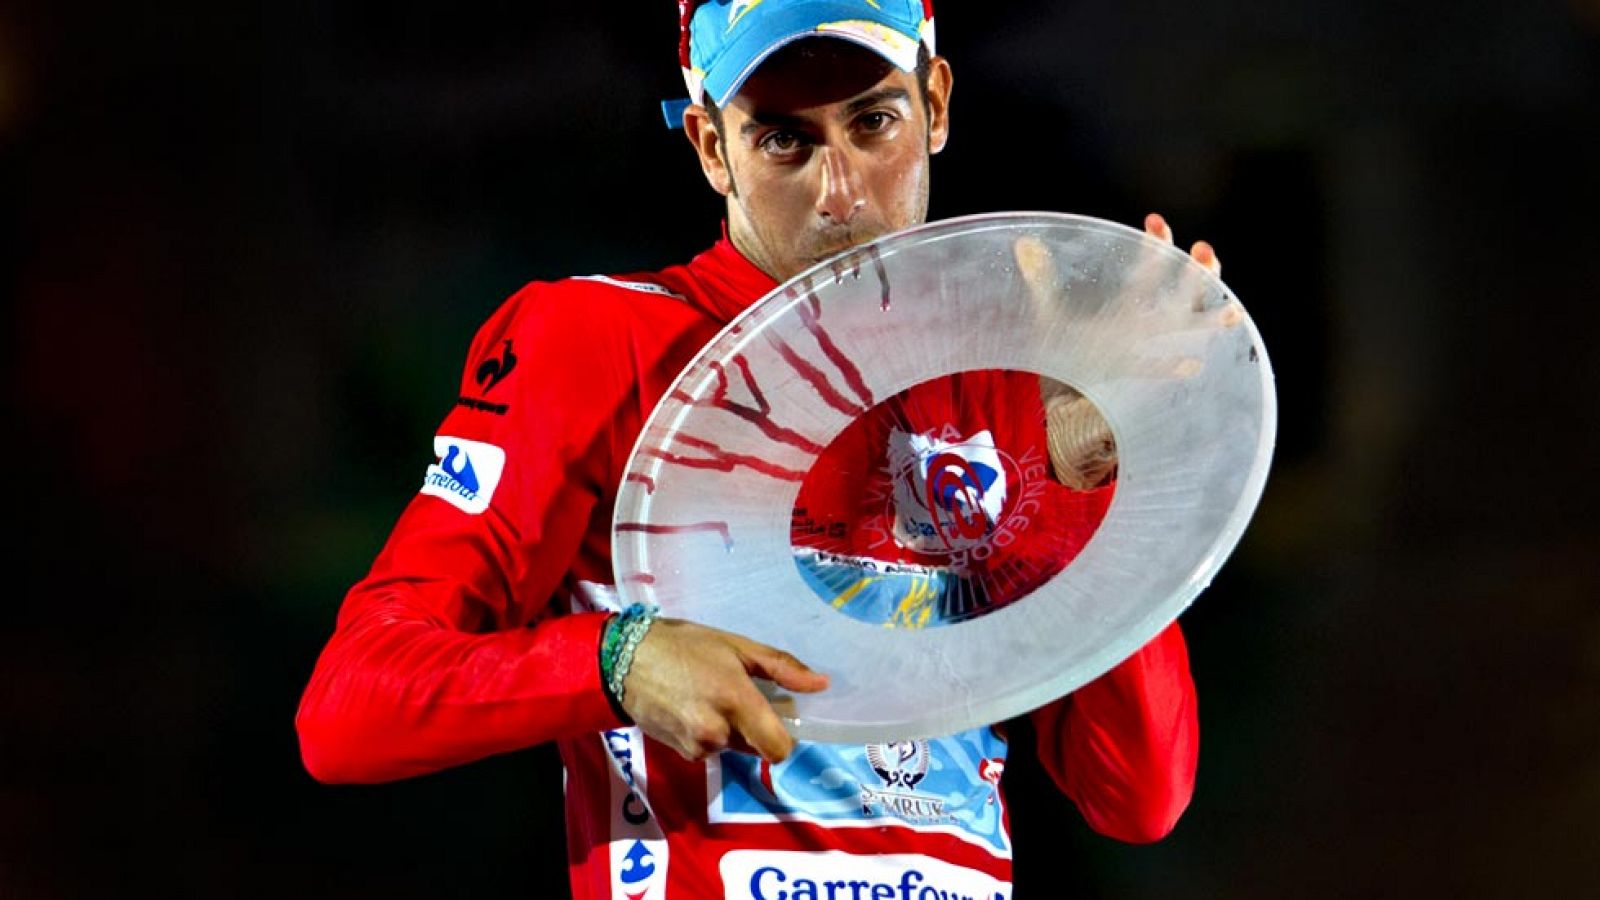 Aru gana la 70 edición de la Vuelta; la etapa de Madrid, para Degenkolb